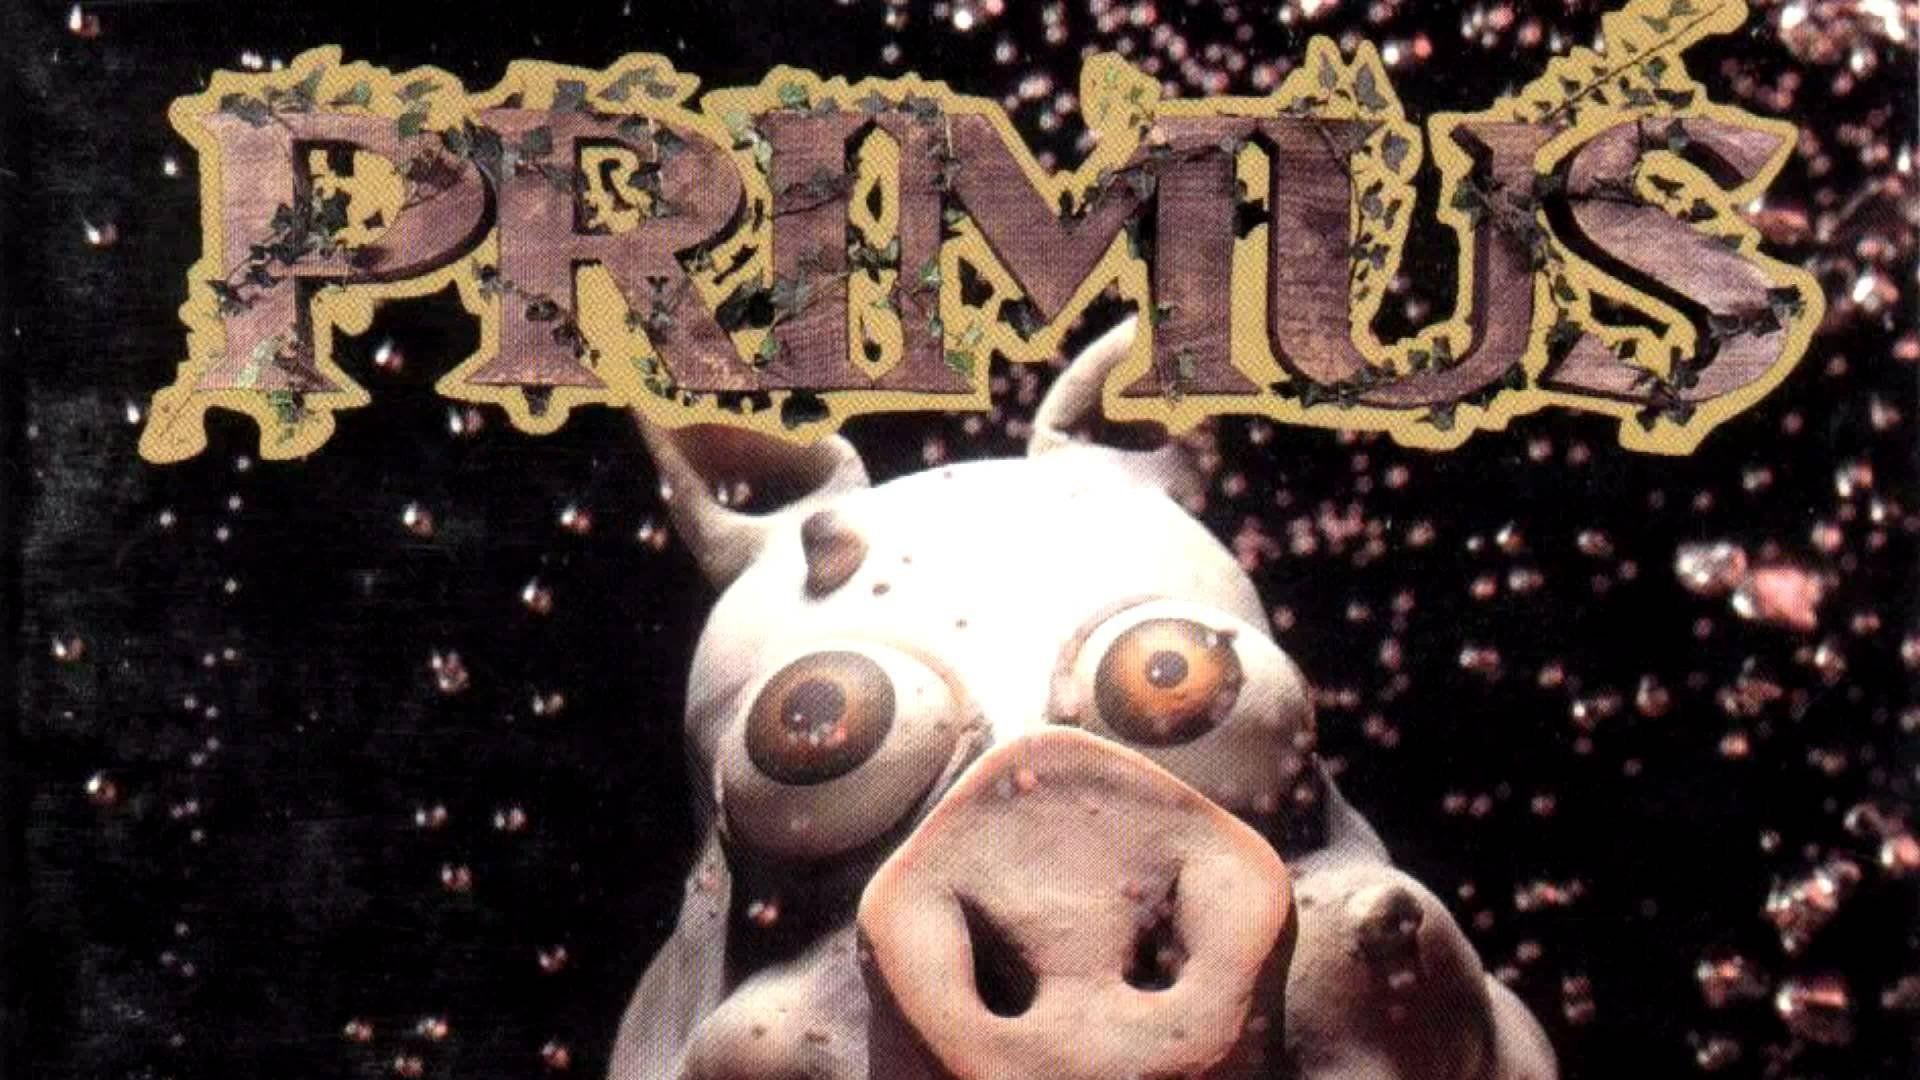 Primus Full HD Quality Image, Primus Wallpaper